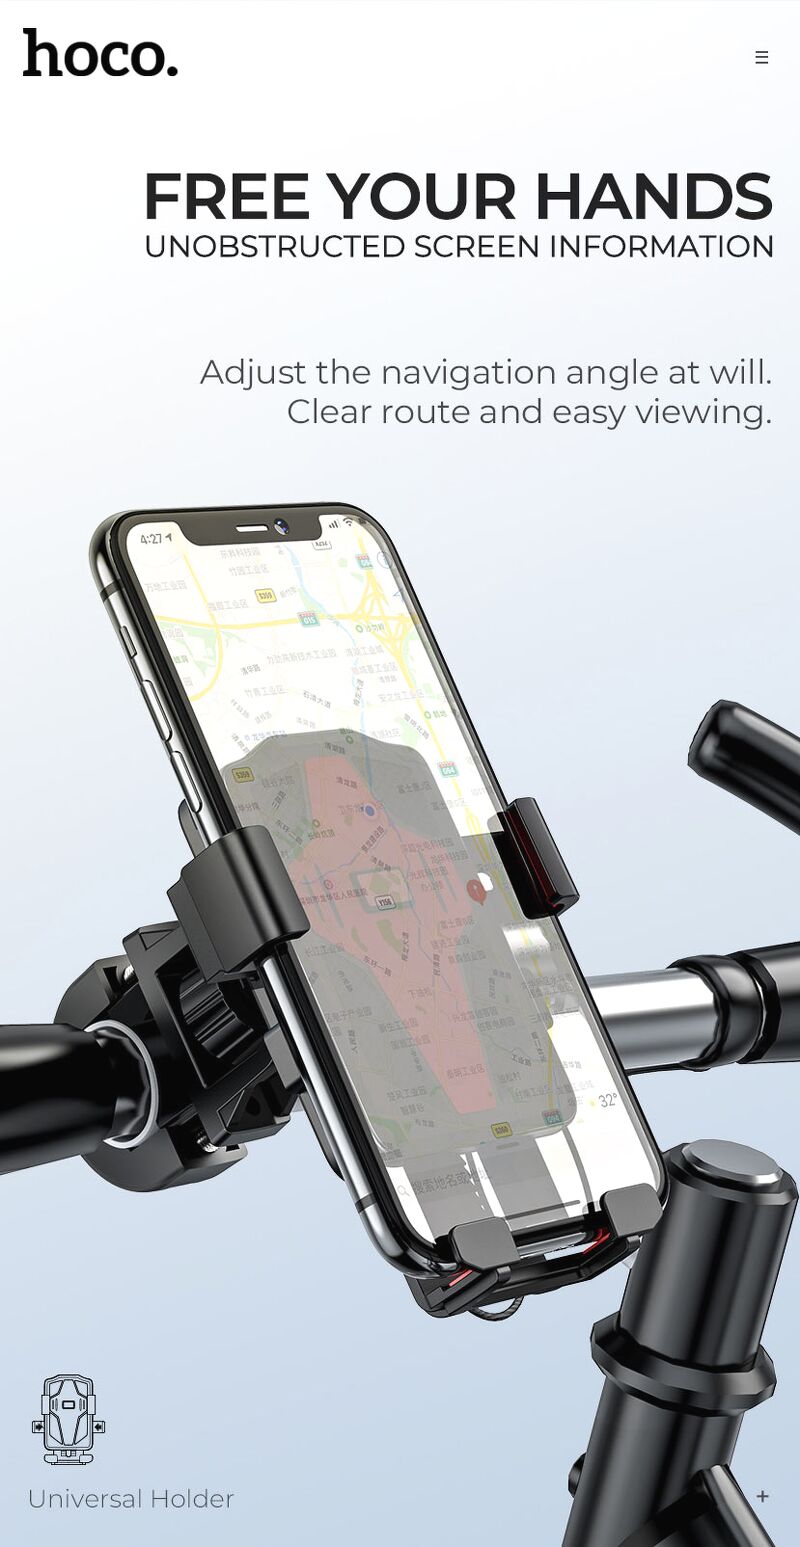 Giá đỡ điện thoại đa năng cho xe máy, xe đạp xoay 360 độ, dễ lắp đặt CA73 - hàng chính hãng